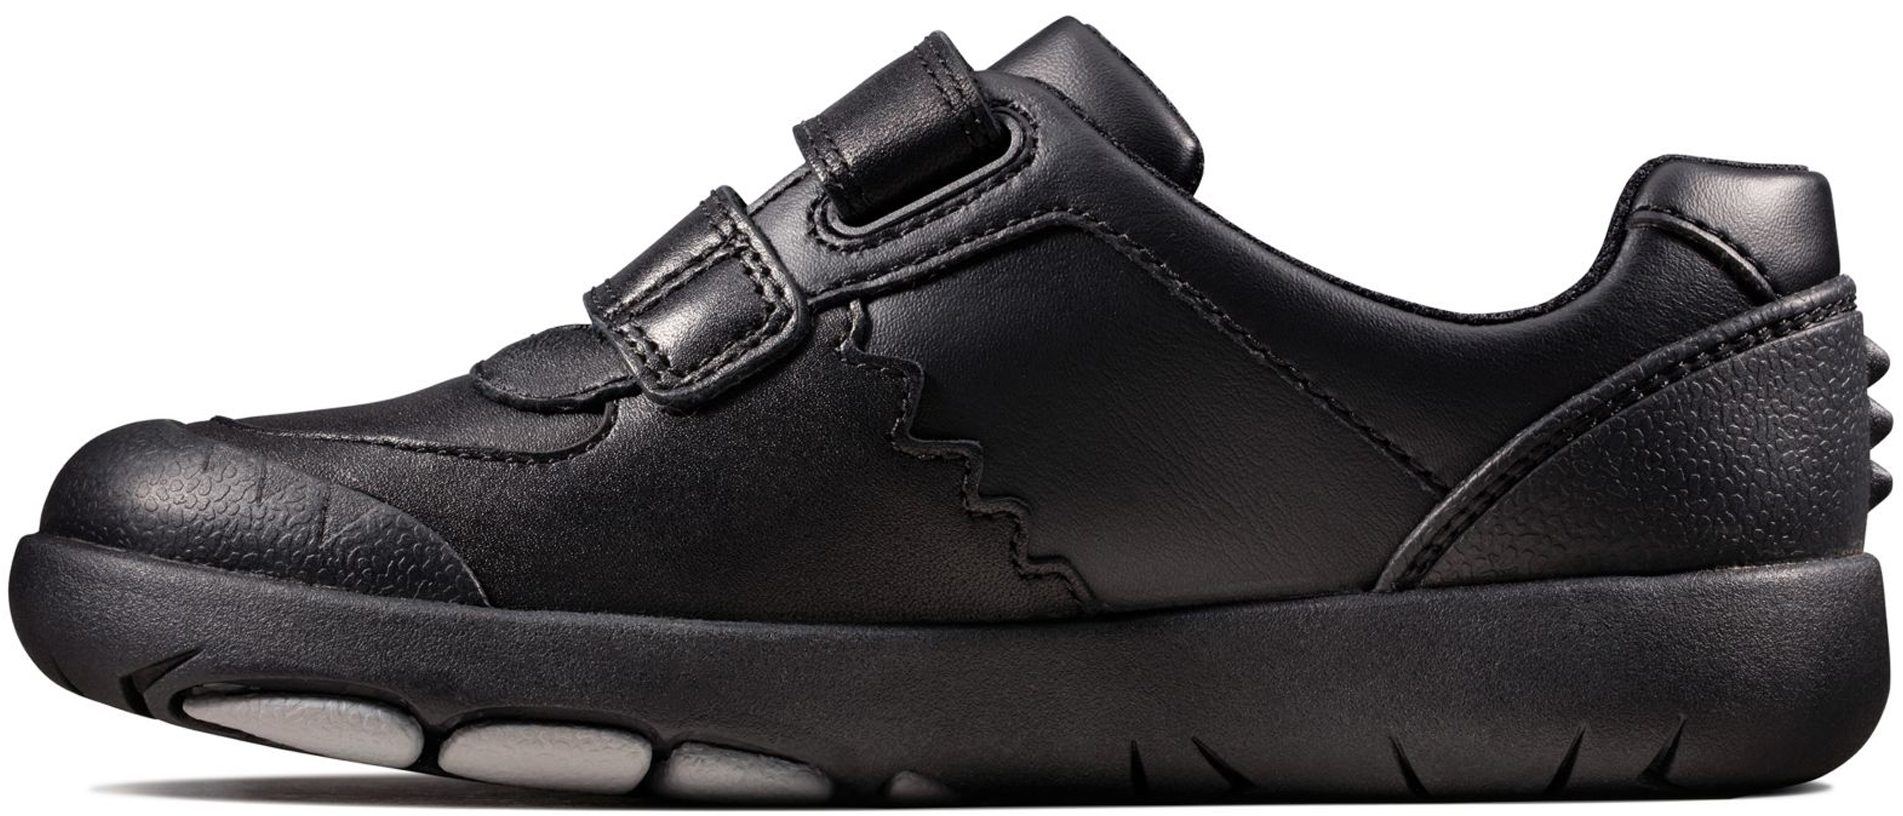 Clarks Rex Pace Kids Black Leather 26147044 - Boys School Shoes ...